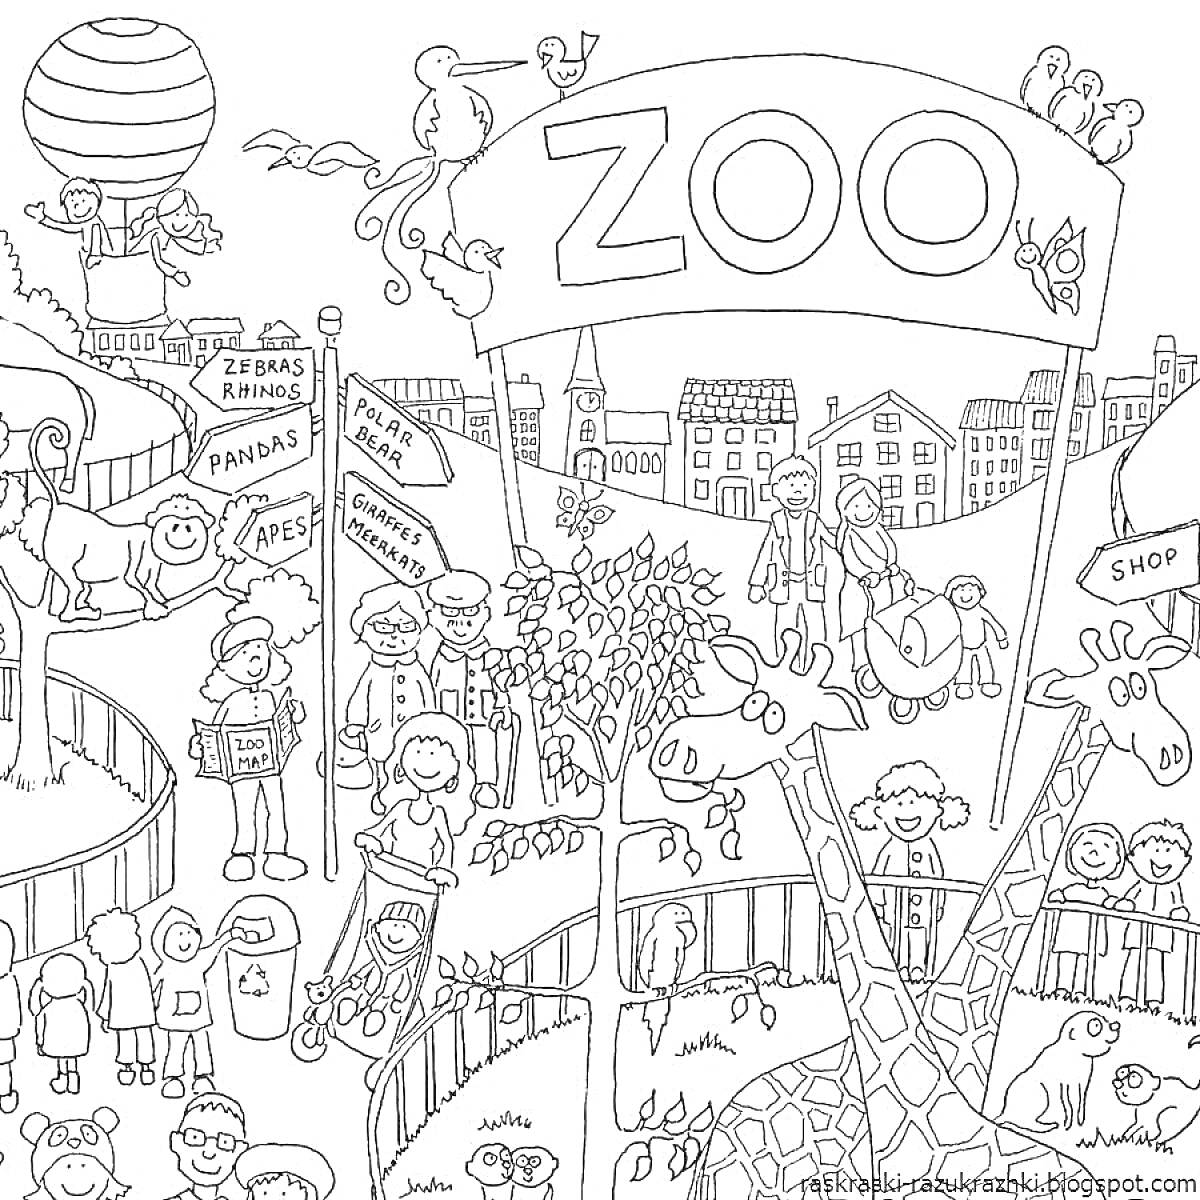 Зоопарк с животными (жирафы, гиббоны), указателями (панды, антилопы, обезьяны, носороги), воздушным шаром, магазинами, посетителями, деревьями и птицами